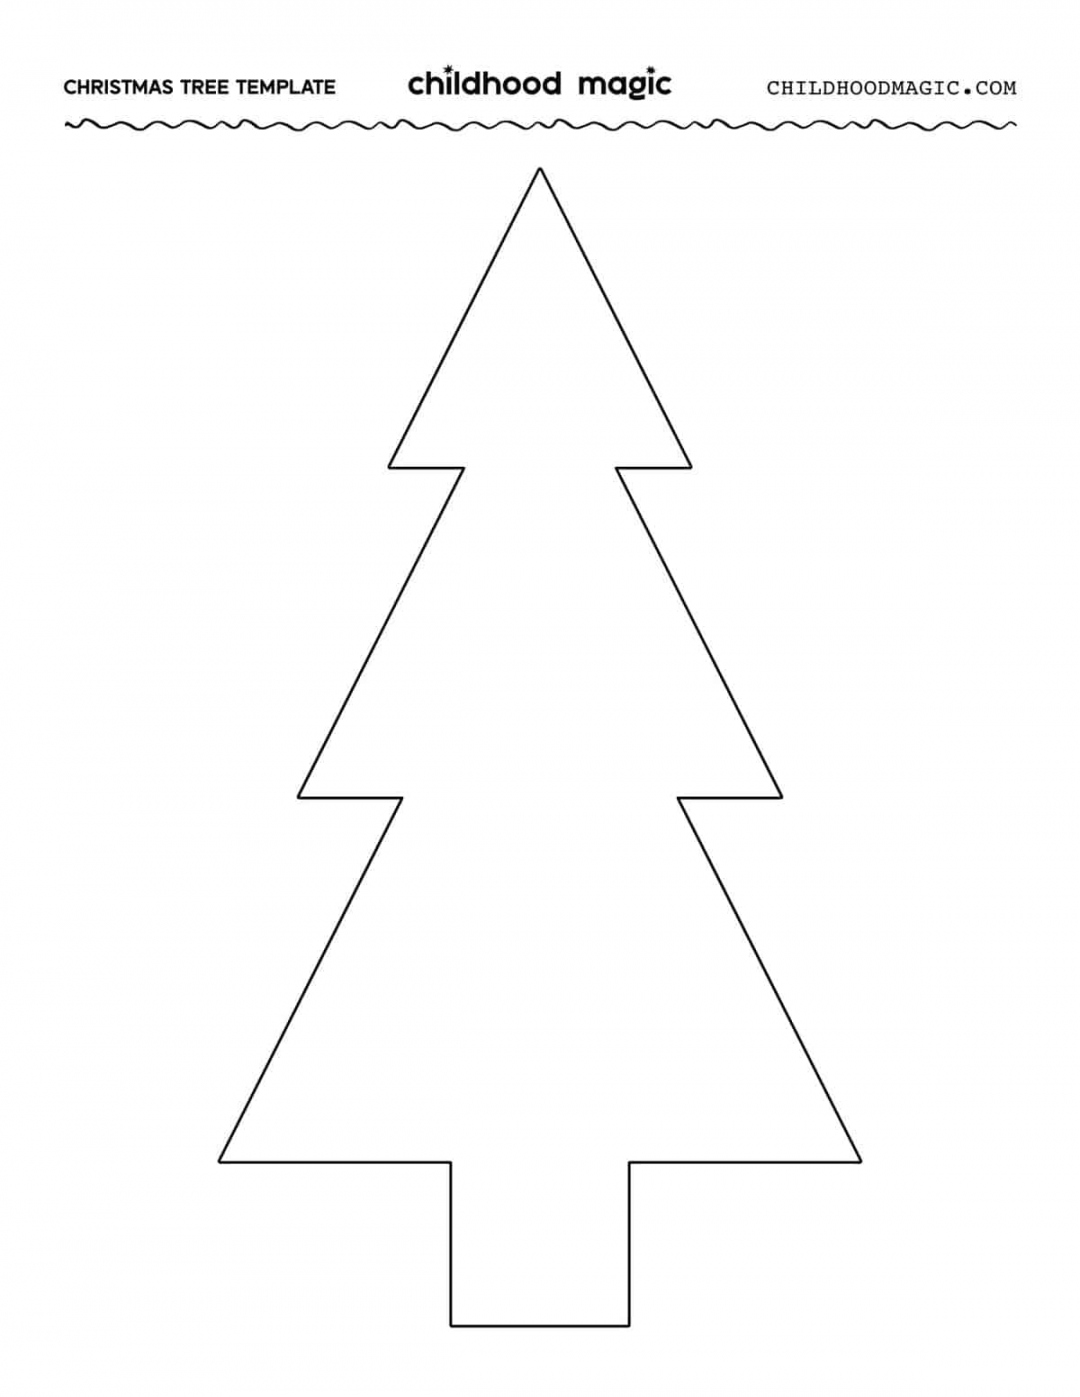 Christmas Tree Template - Free Printables - Childhood Magic - FREE Printables - Christmas Tree Template Printable